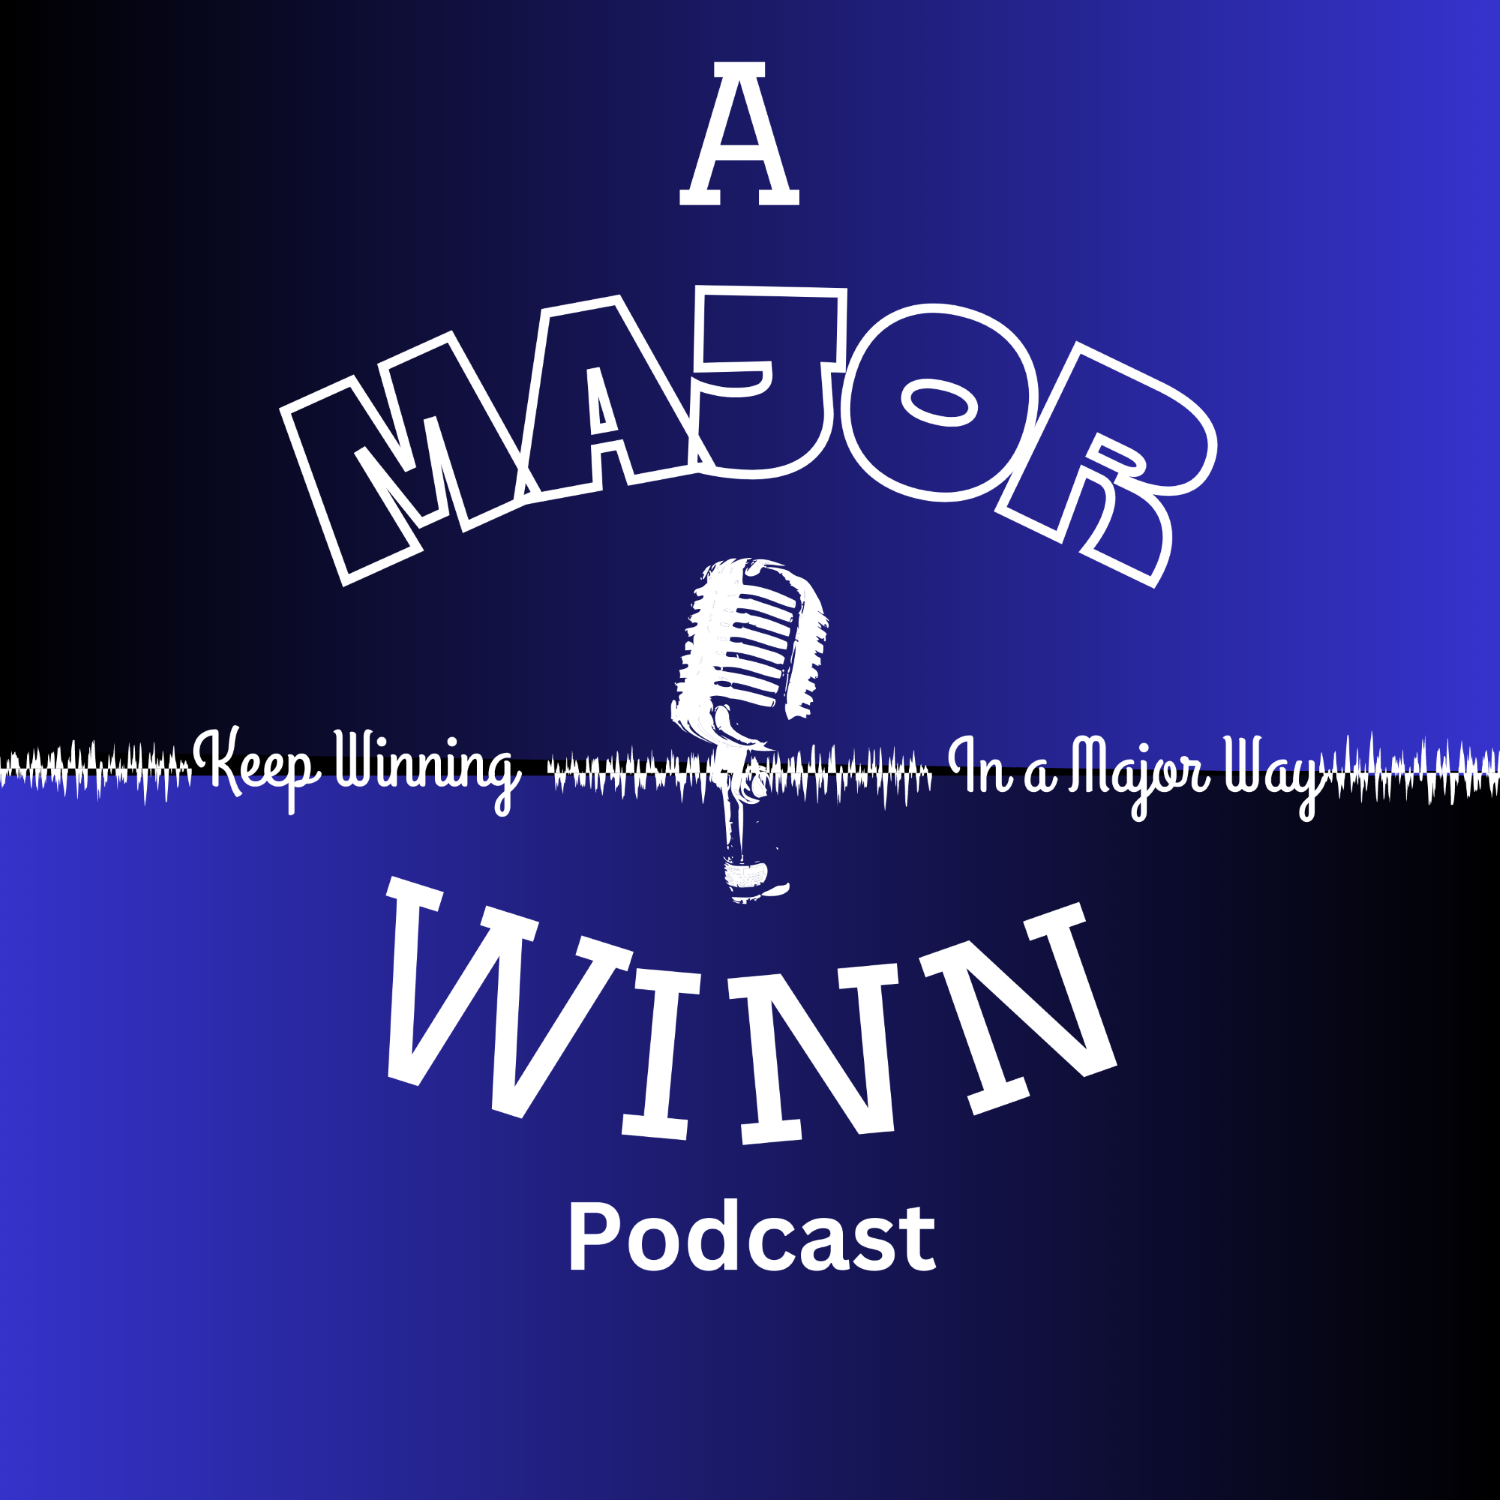 A Major Winn Podcast